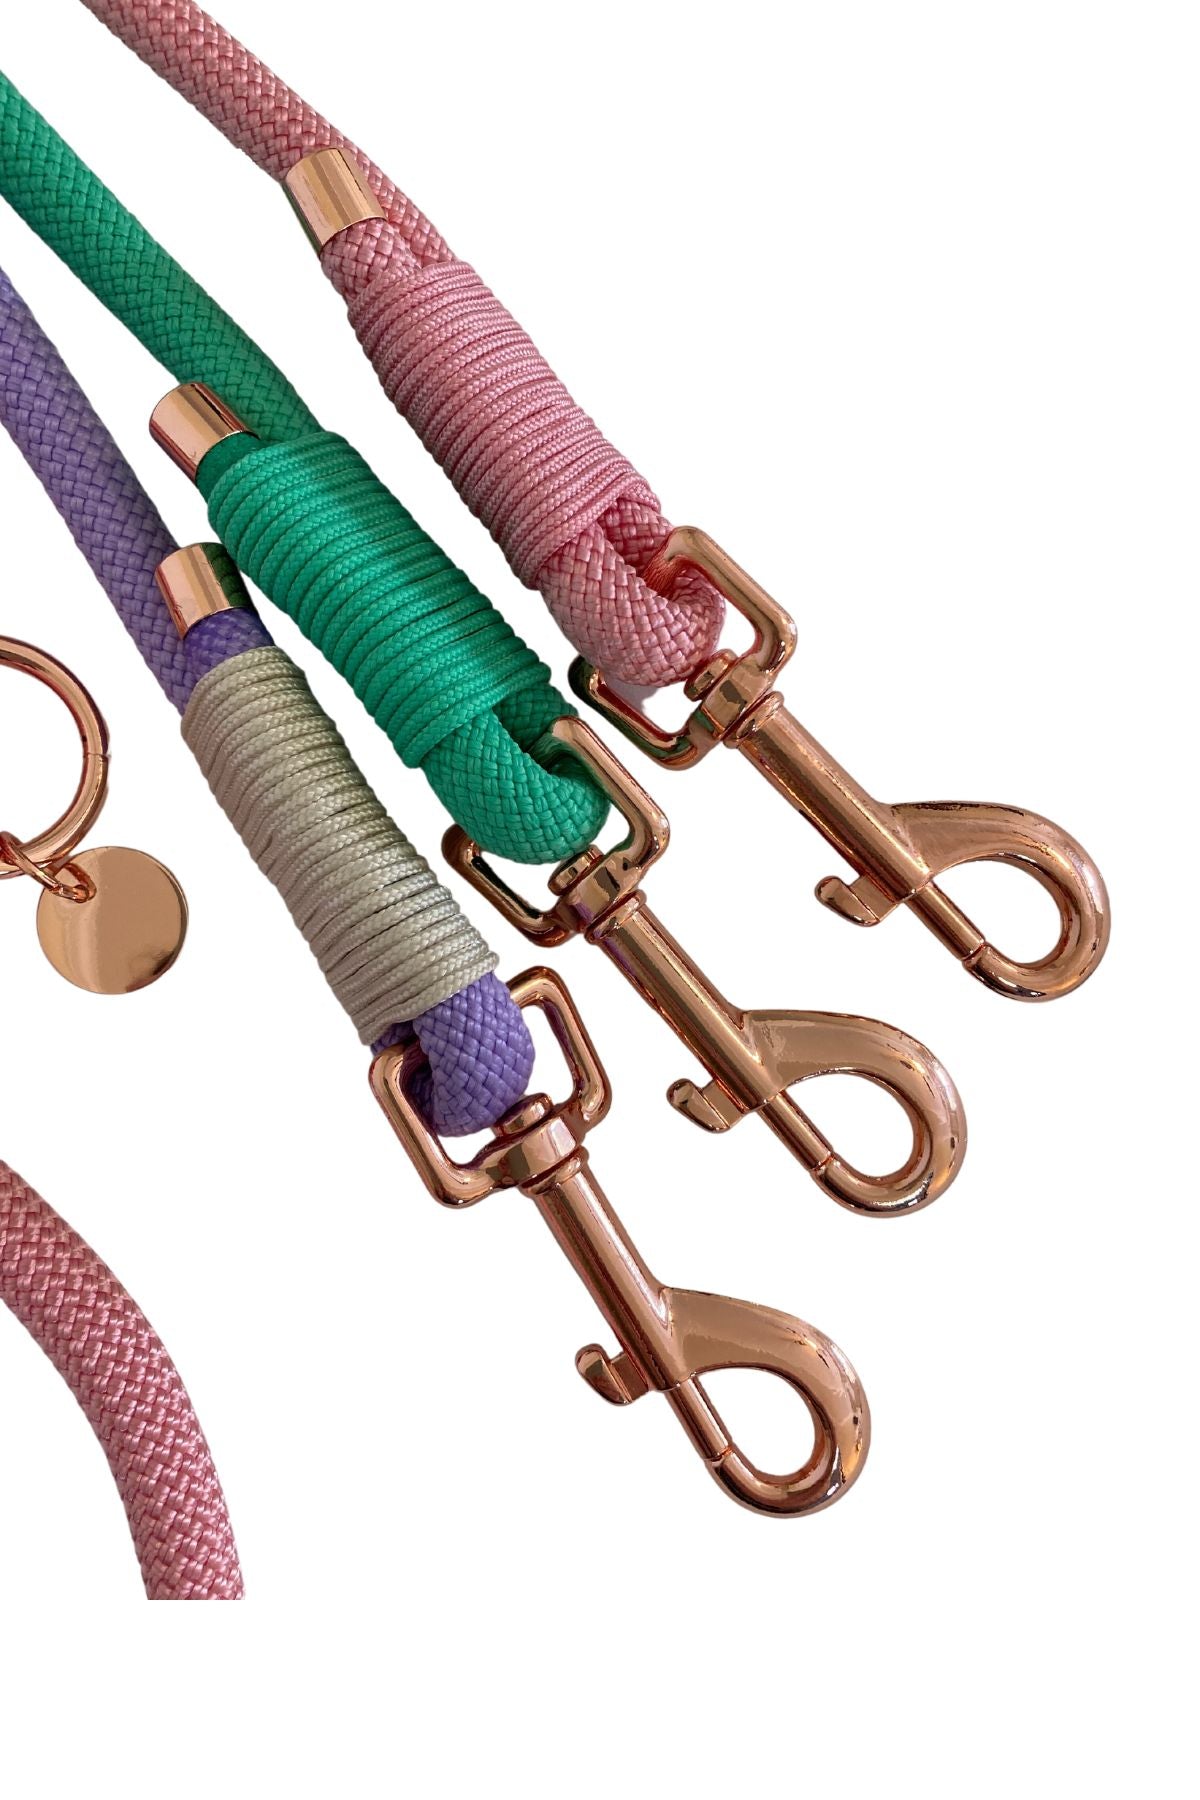 Rope Leash - Vibrant Purple